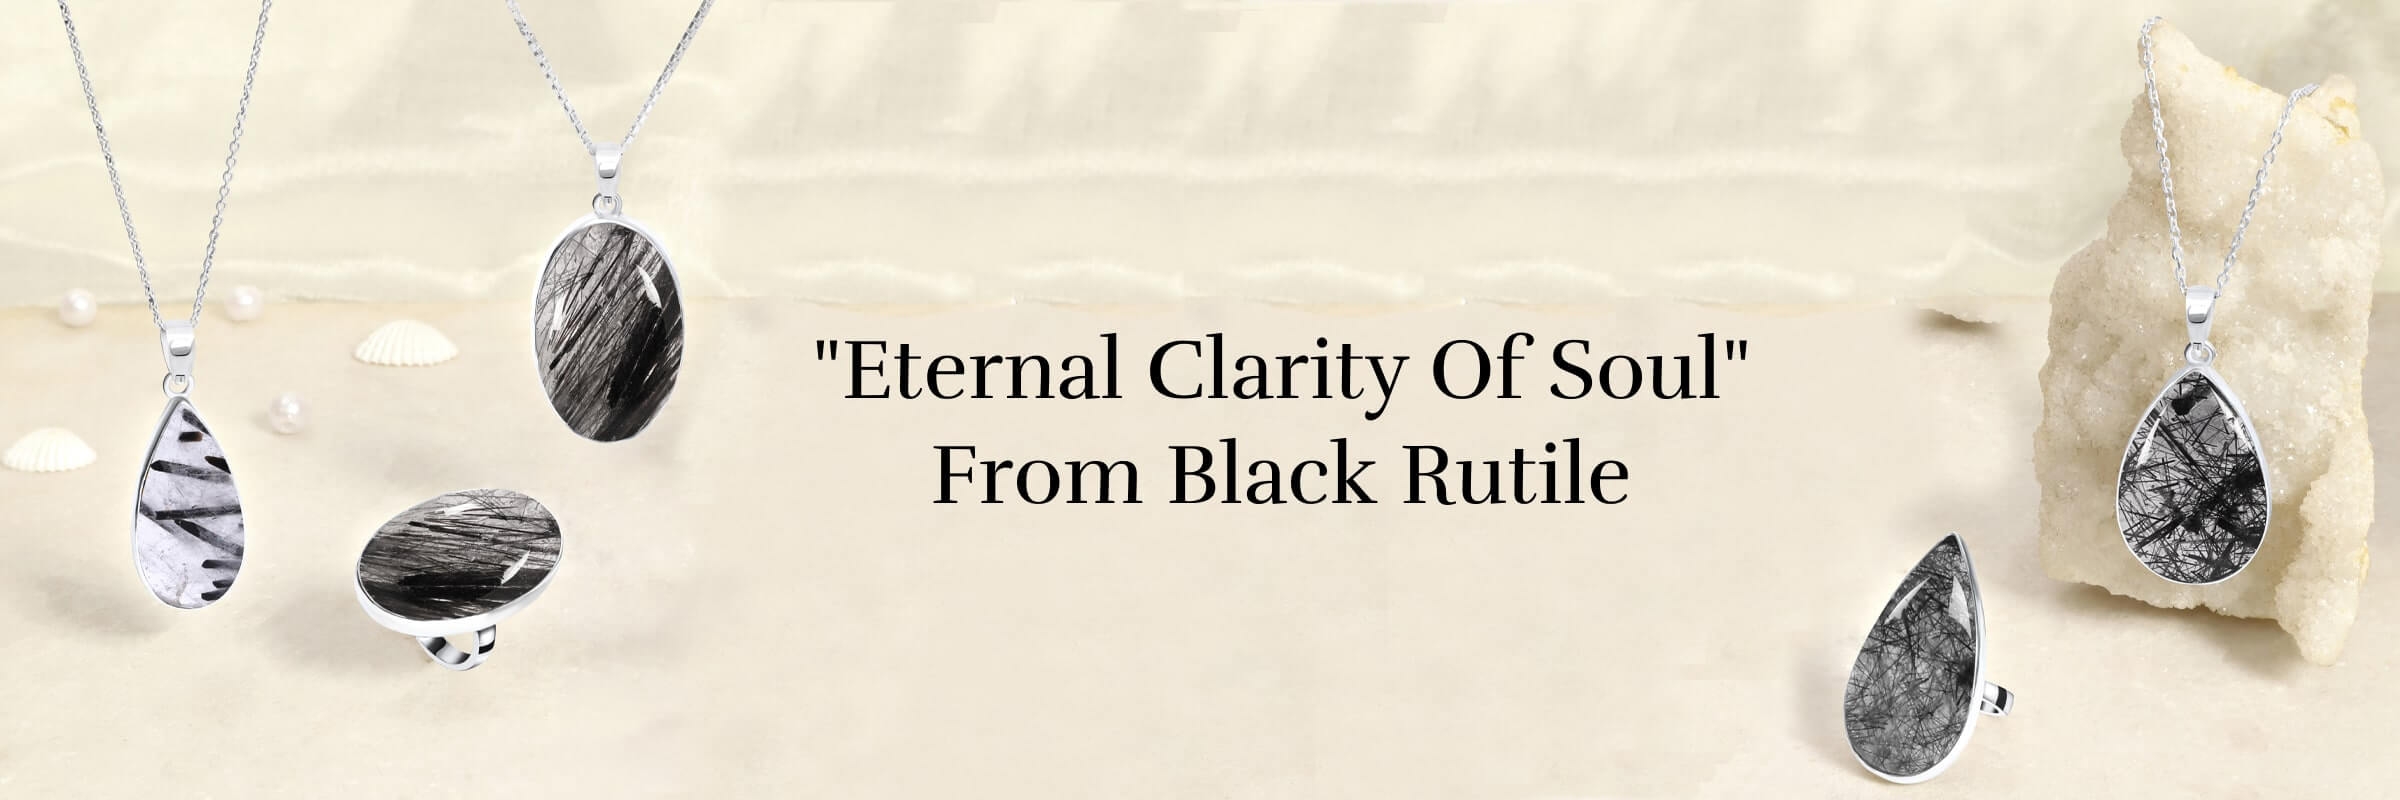 Spiritual healing benefits of black rutile